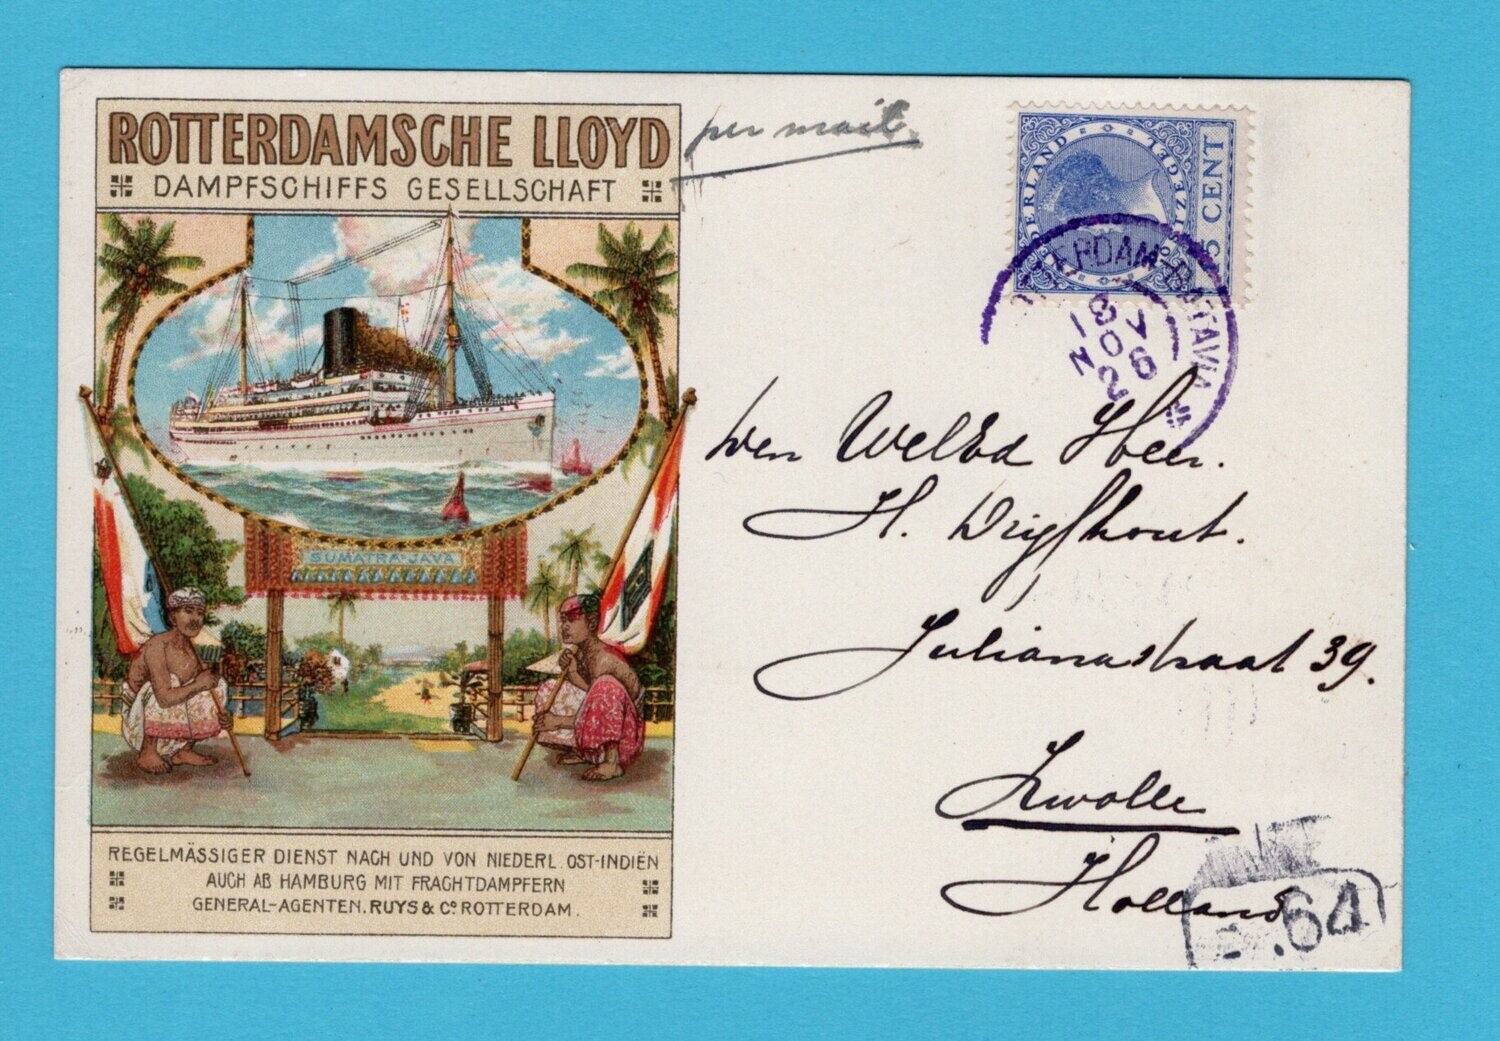 NEDERLAND briefkaart 1926 S.S. Tabanan met tekst in Duits